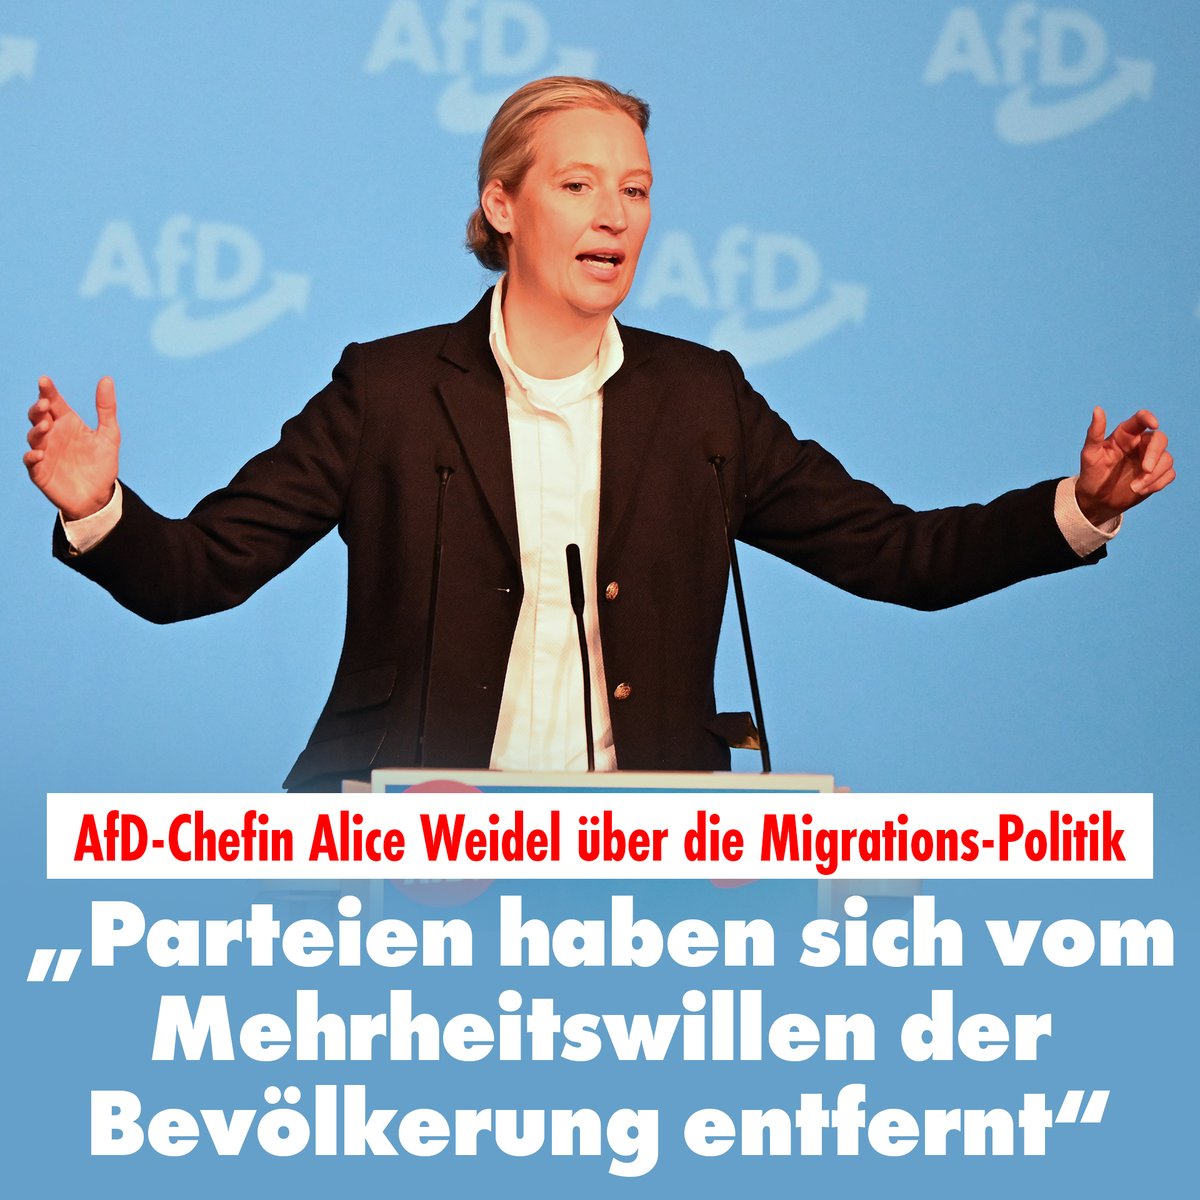 Die Deutschen wollen laut Insa-Umfrage eine Umkehr in der Migrationspolitik. AfD-Chefin @Alice_Weidel zu NIUS: „Die Deutschen wurden nie gefragt, ob sie den Kurs der ungesteuerten Einwanderung befürworten.“ Sie plädiere für mehr Direktdemokratie. nius.de/politik/afd-ch…